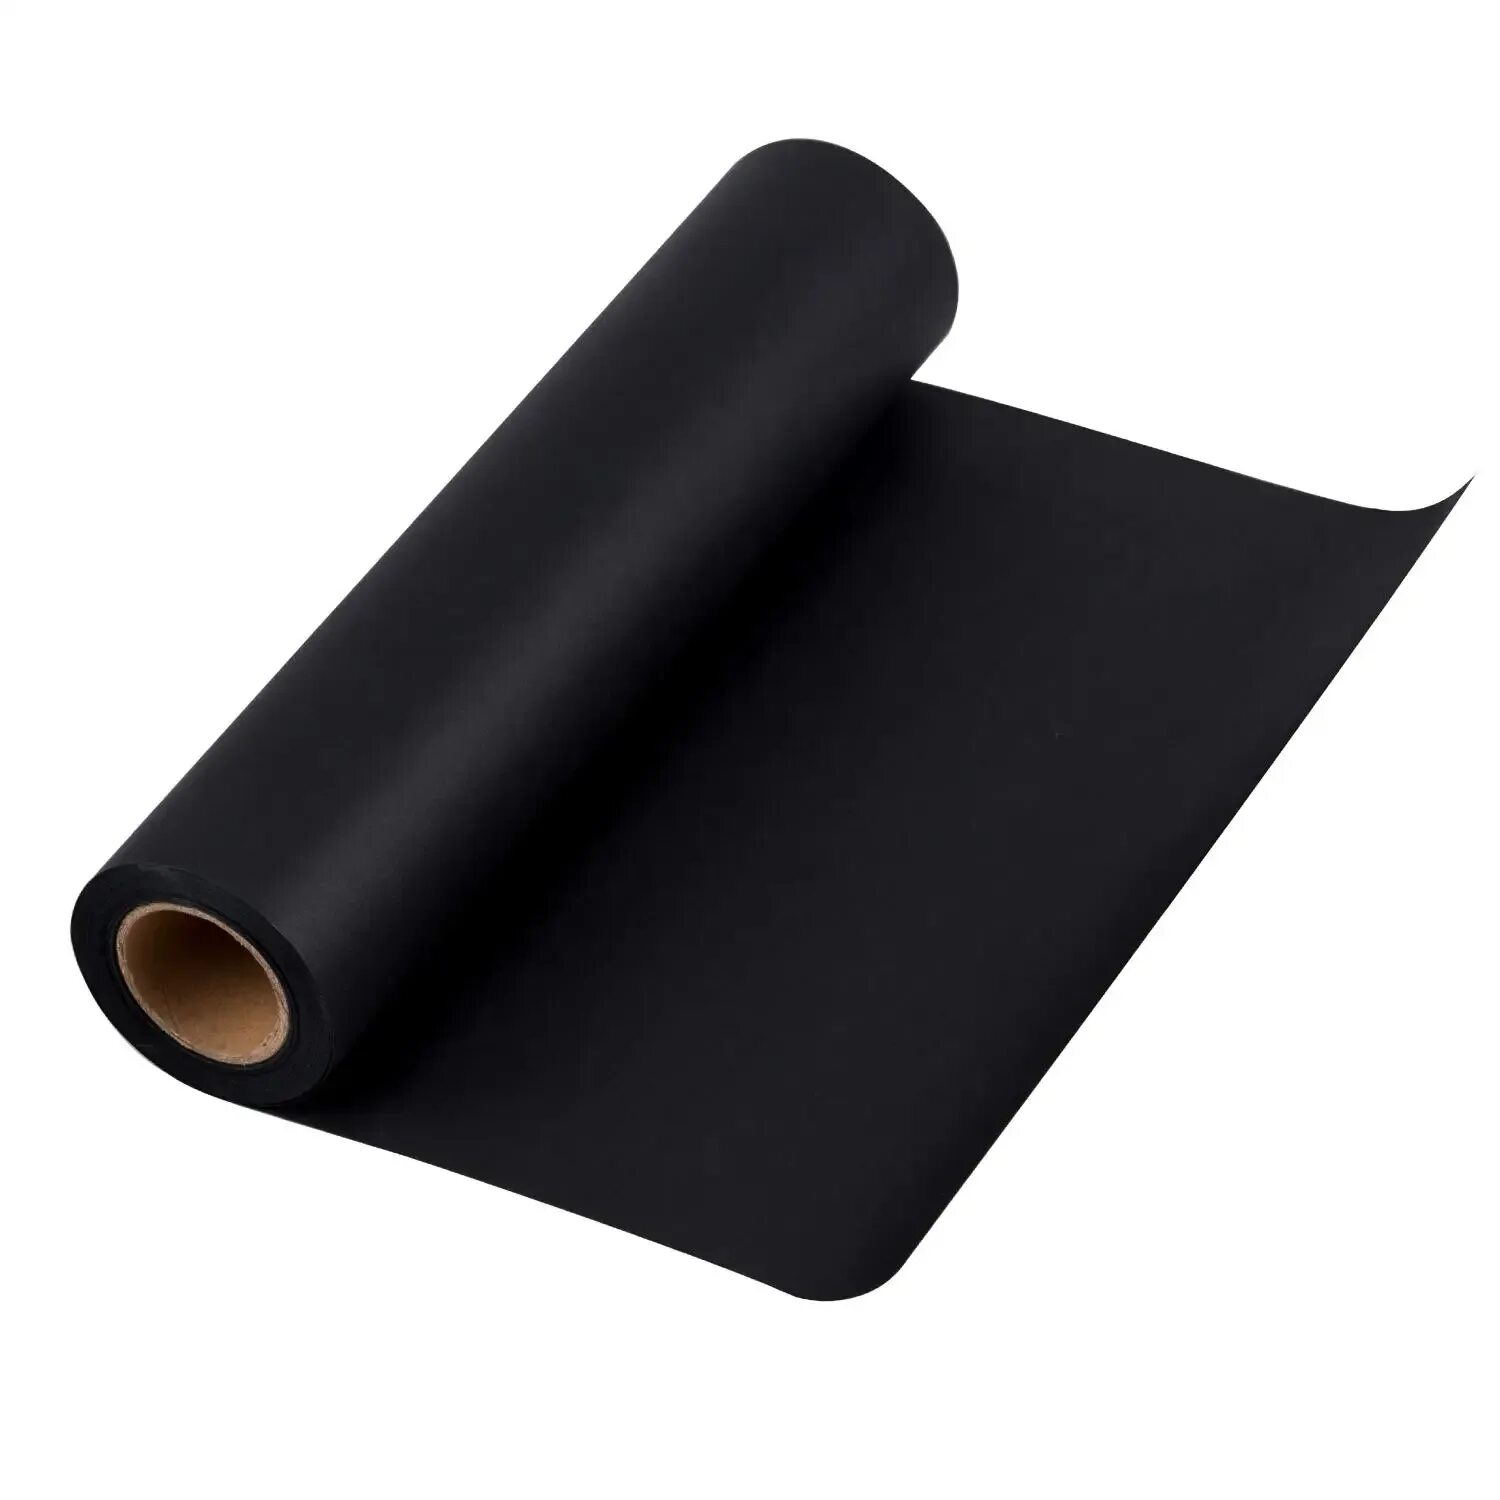 Бумага битумированная п-350. Рулон черной крафт-бумаги 120 г/м2. Черная упаковочная бумага. Бумага битумированная.